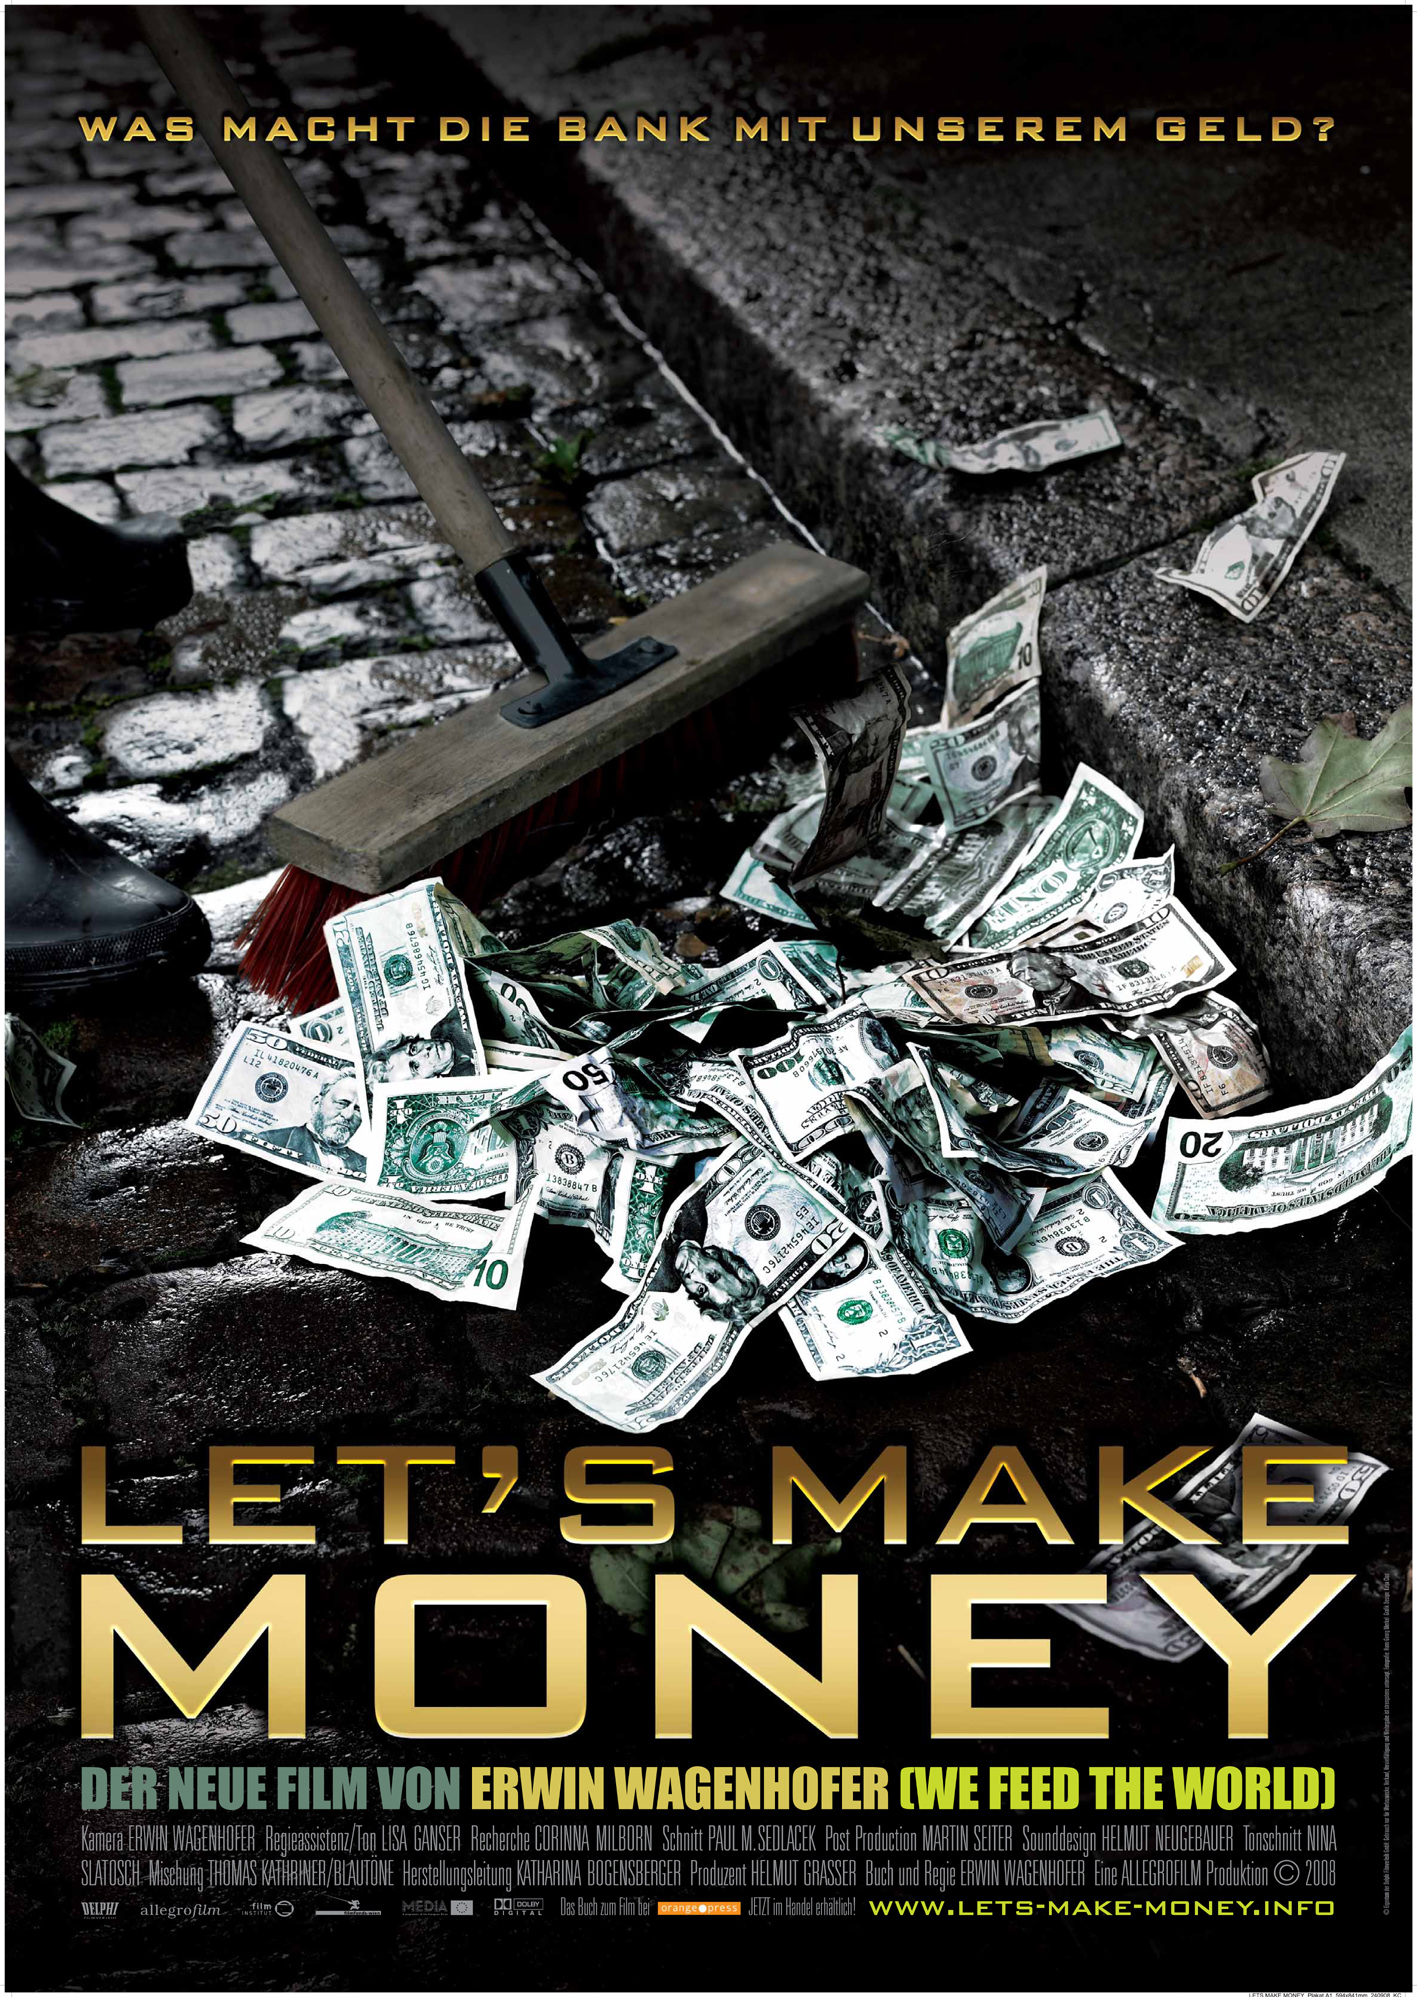 Музыка делаю деньги. Денежные постеры. Постер деньги. Плакат про деньги. Деньги делают деньги.